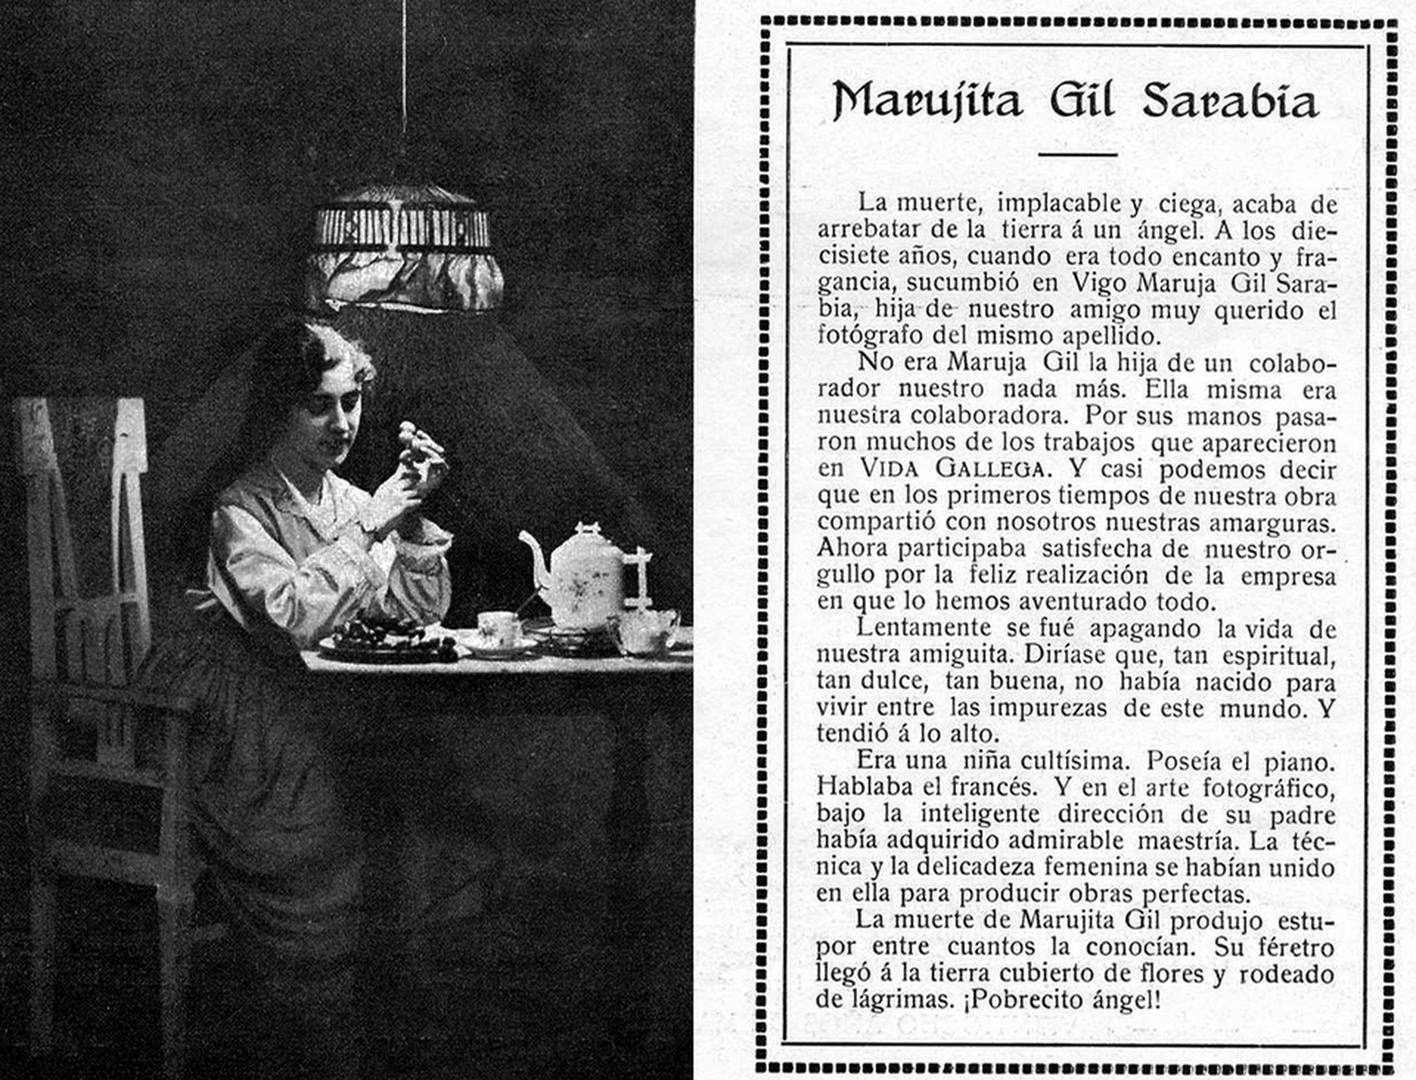 Necrolóxica de María Gil en VG, 1918